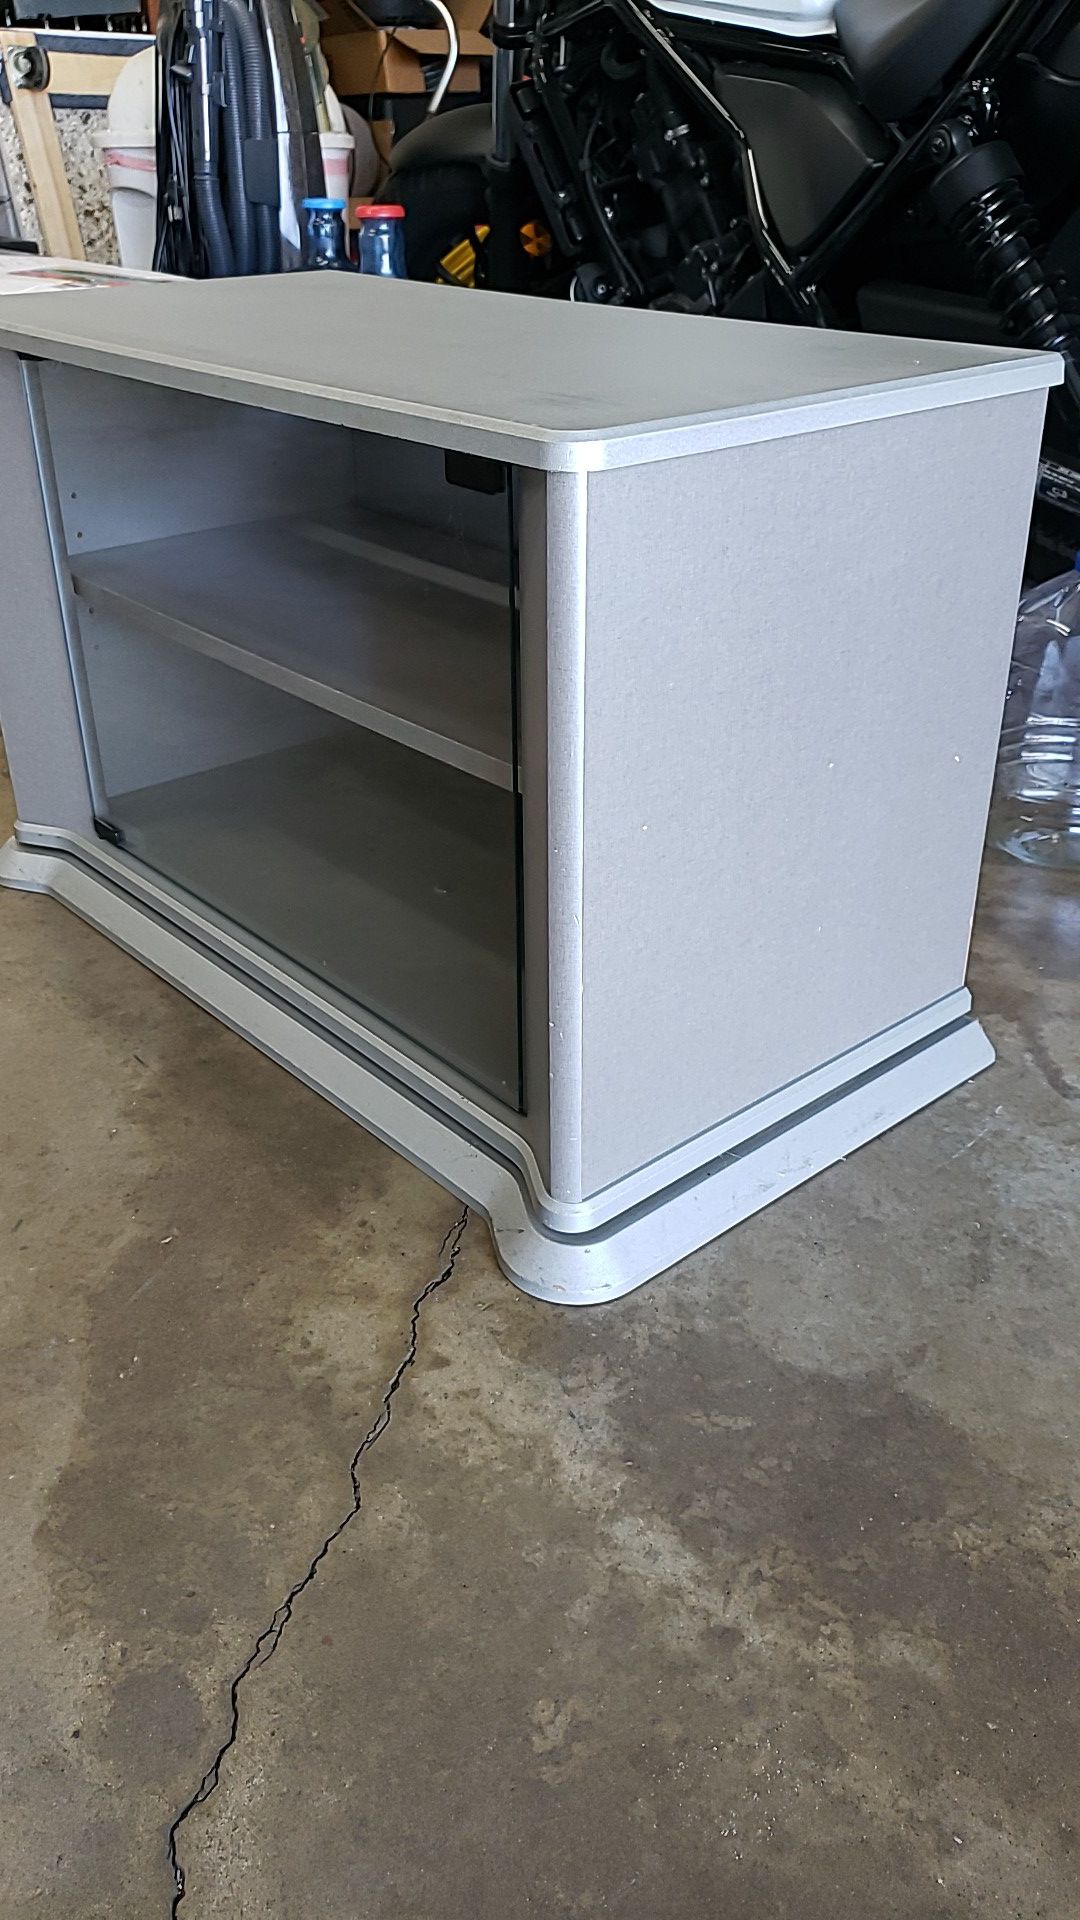 Swivel TV stand, grey, 2 shelves with glass door